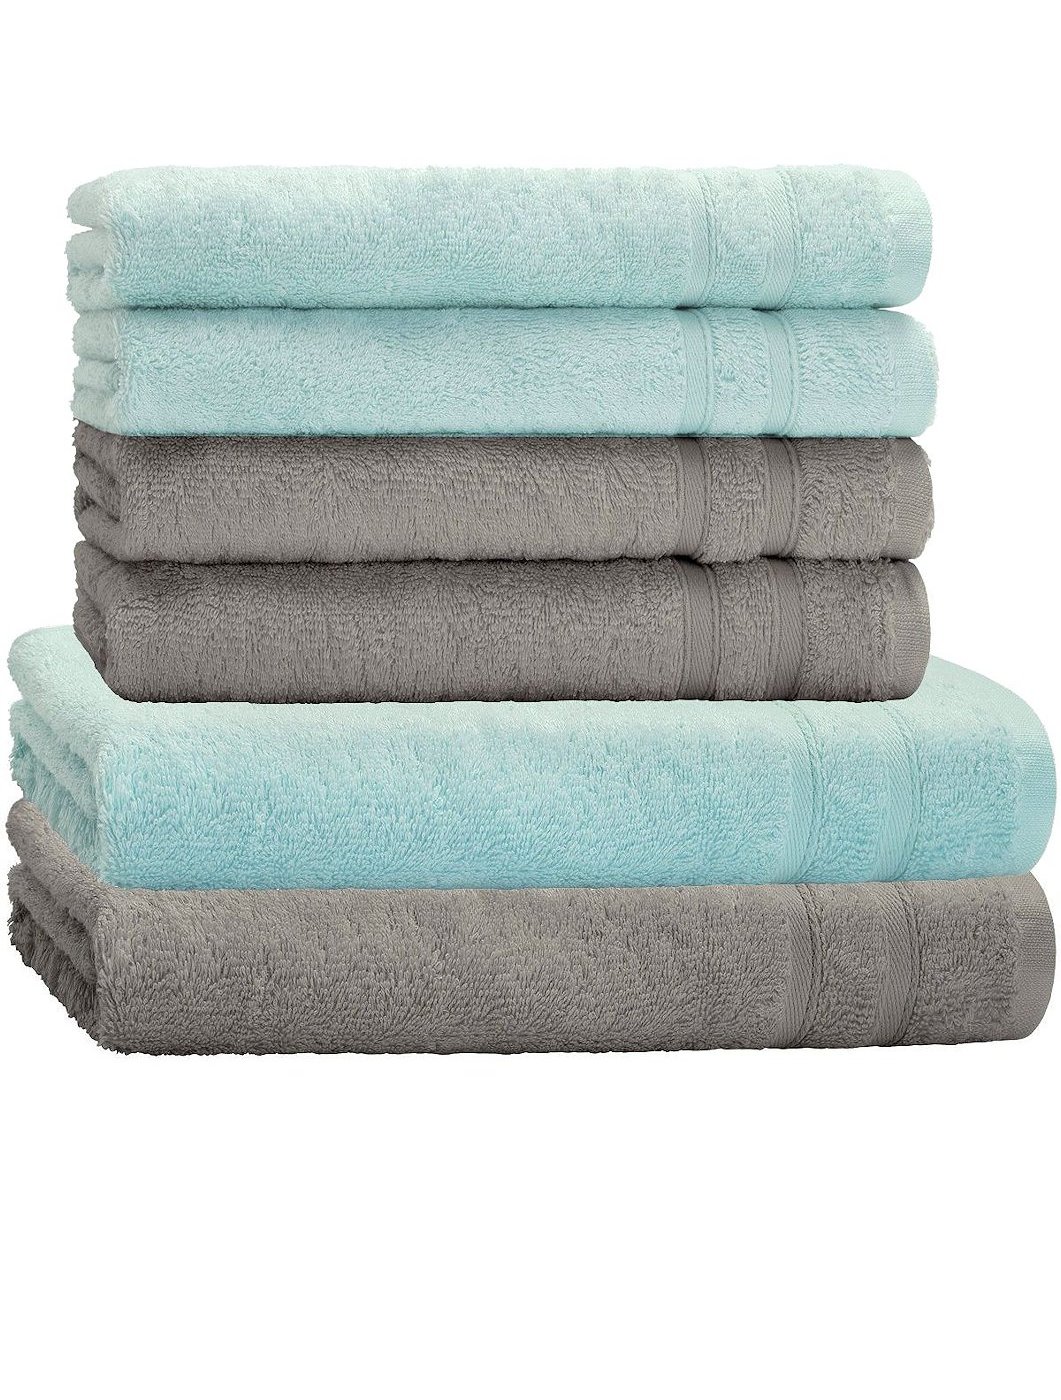 Handtuch Set 6tlg. 4 Handtücher 2 2 Duschtuch Farben Baumwolle | Mix eBay Duschtücher